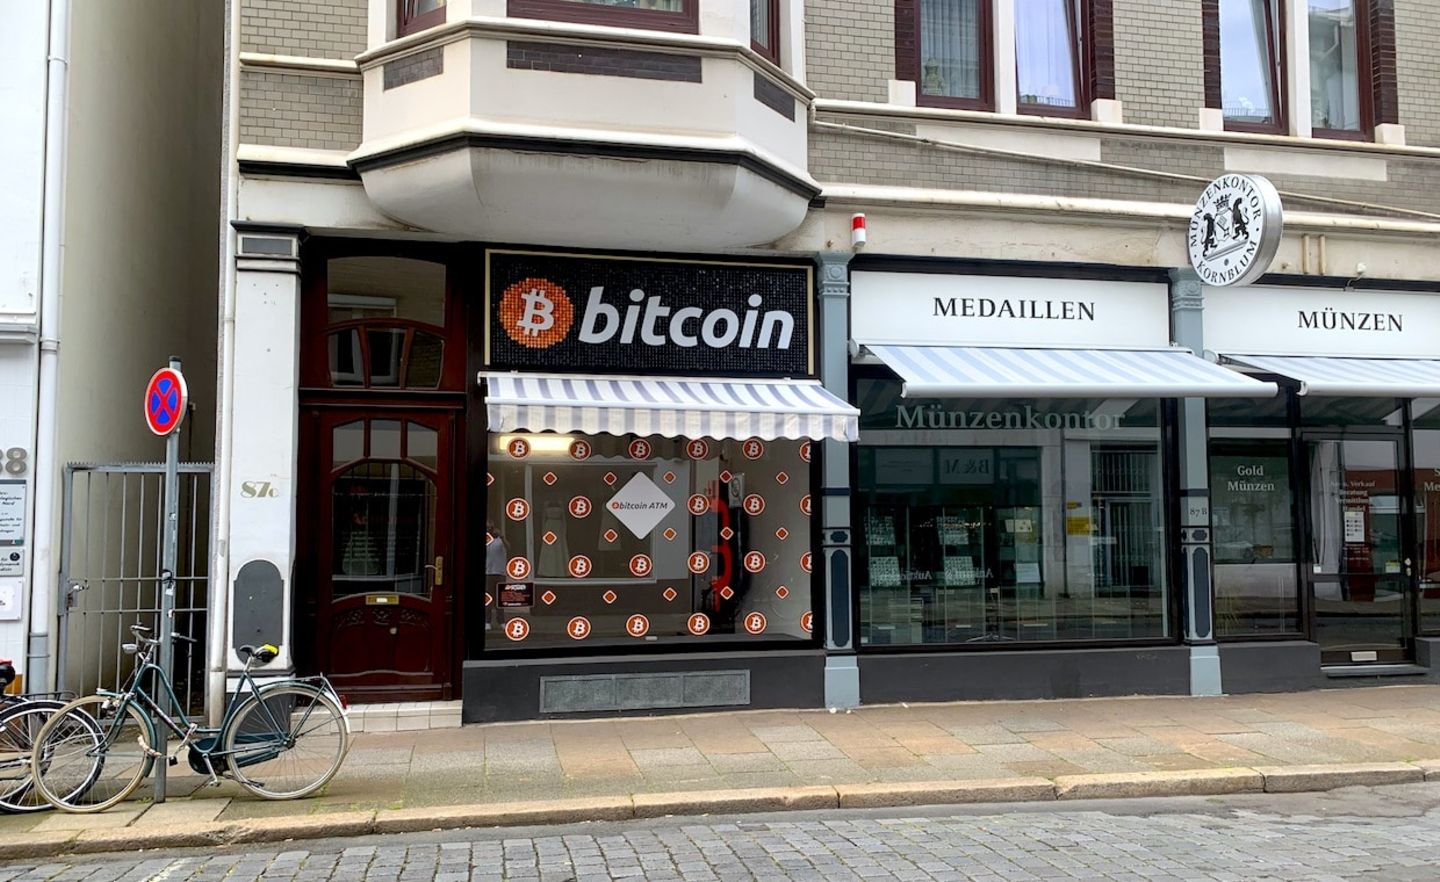 Bitcoin-Automaten bekommen mitunter eigene Filialen, wie bei diesem Beispiel in Bremen von der polnischen Firma Shitcoins